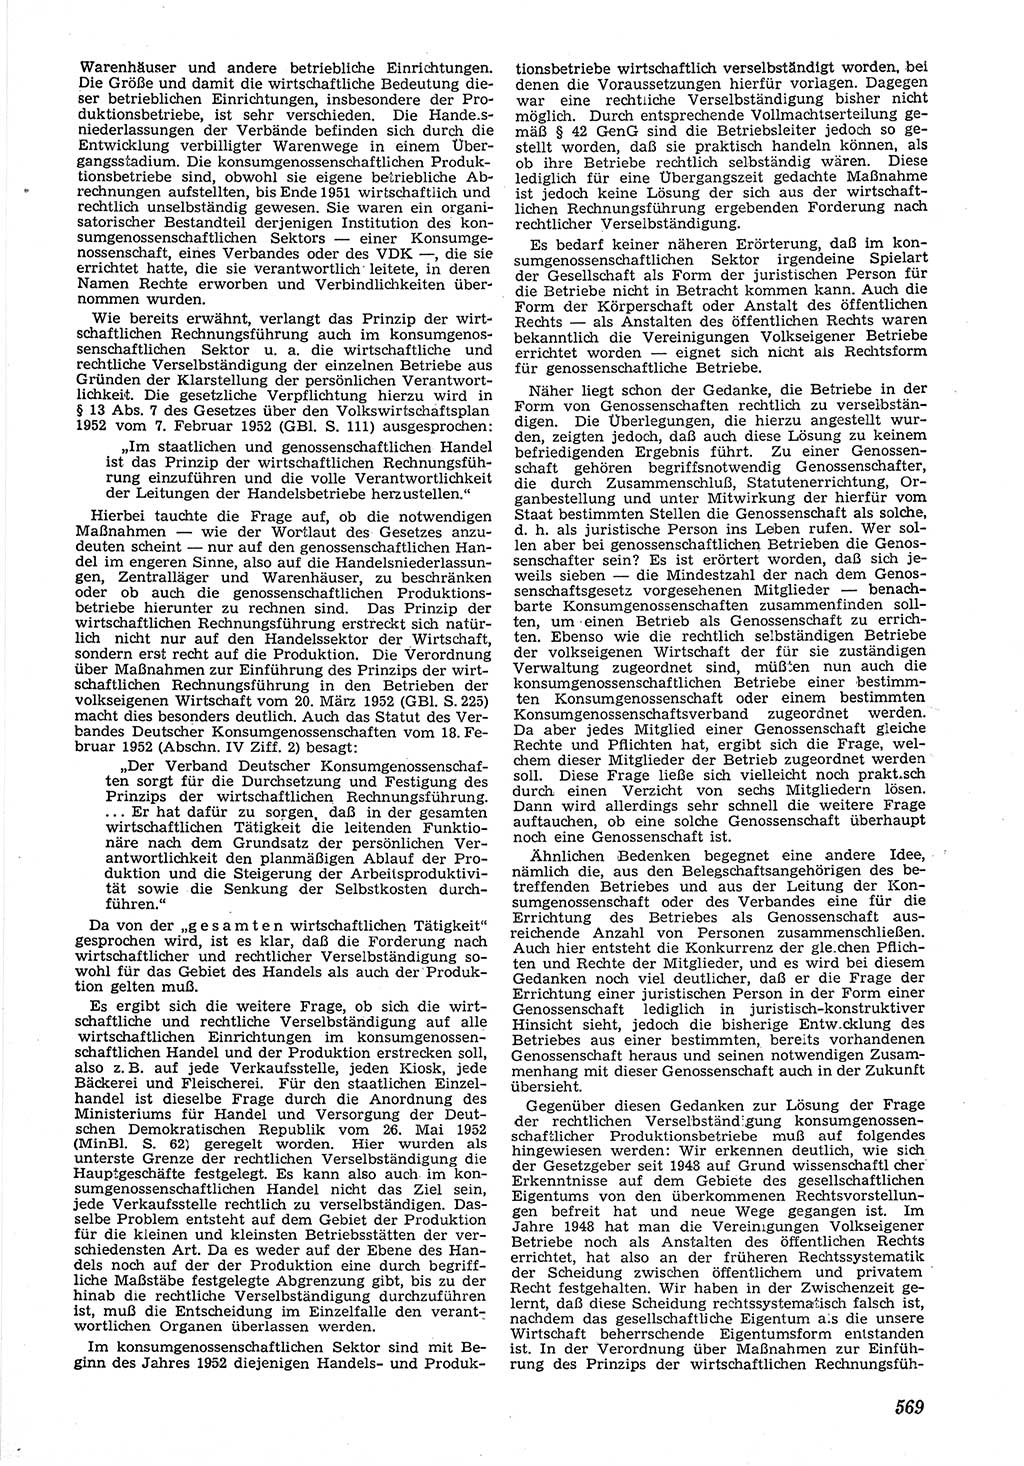 Neue Justiz (NJ), Zeitschrift für Recht und Rechtswissenschaft [Deutsche Demokratische Republik (DDR)], 6. Jahrgang 1952, Seite 569 (NJ DDR 1952, S. 569)